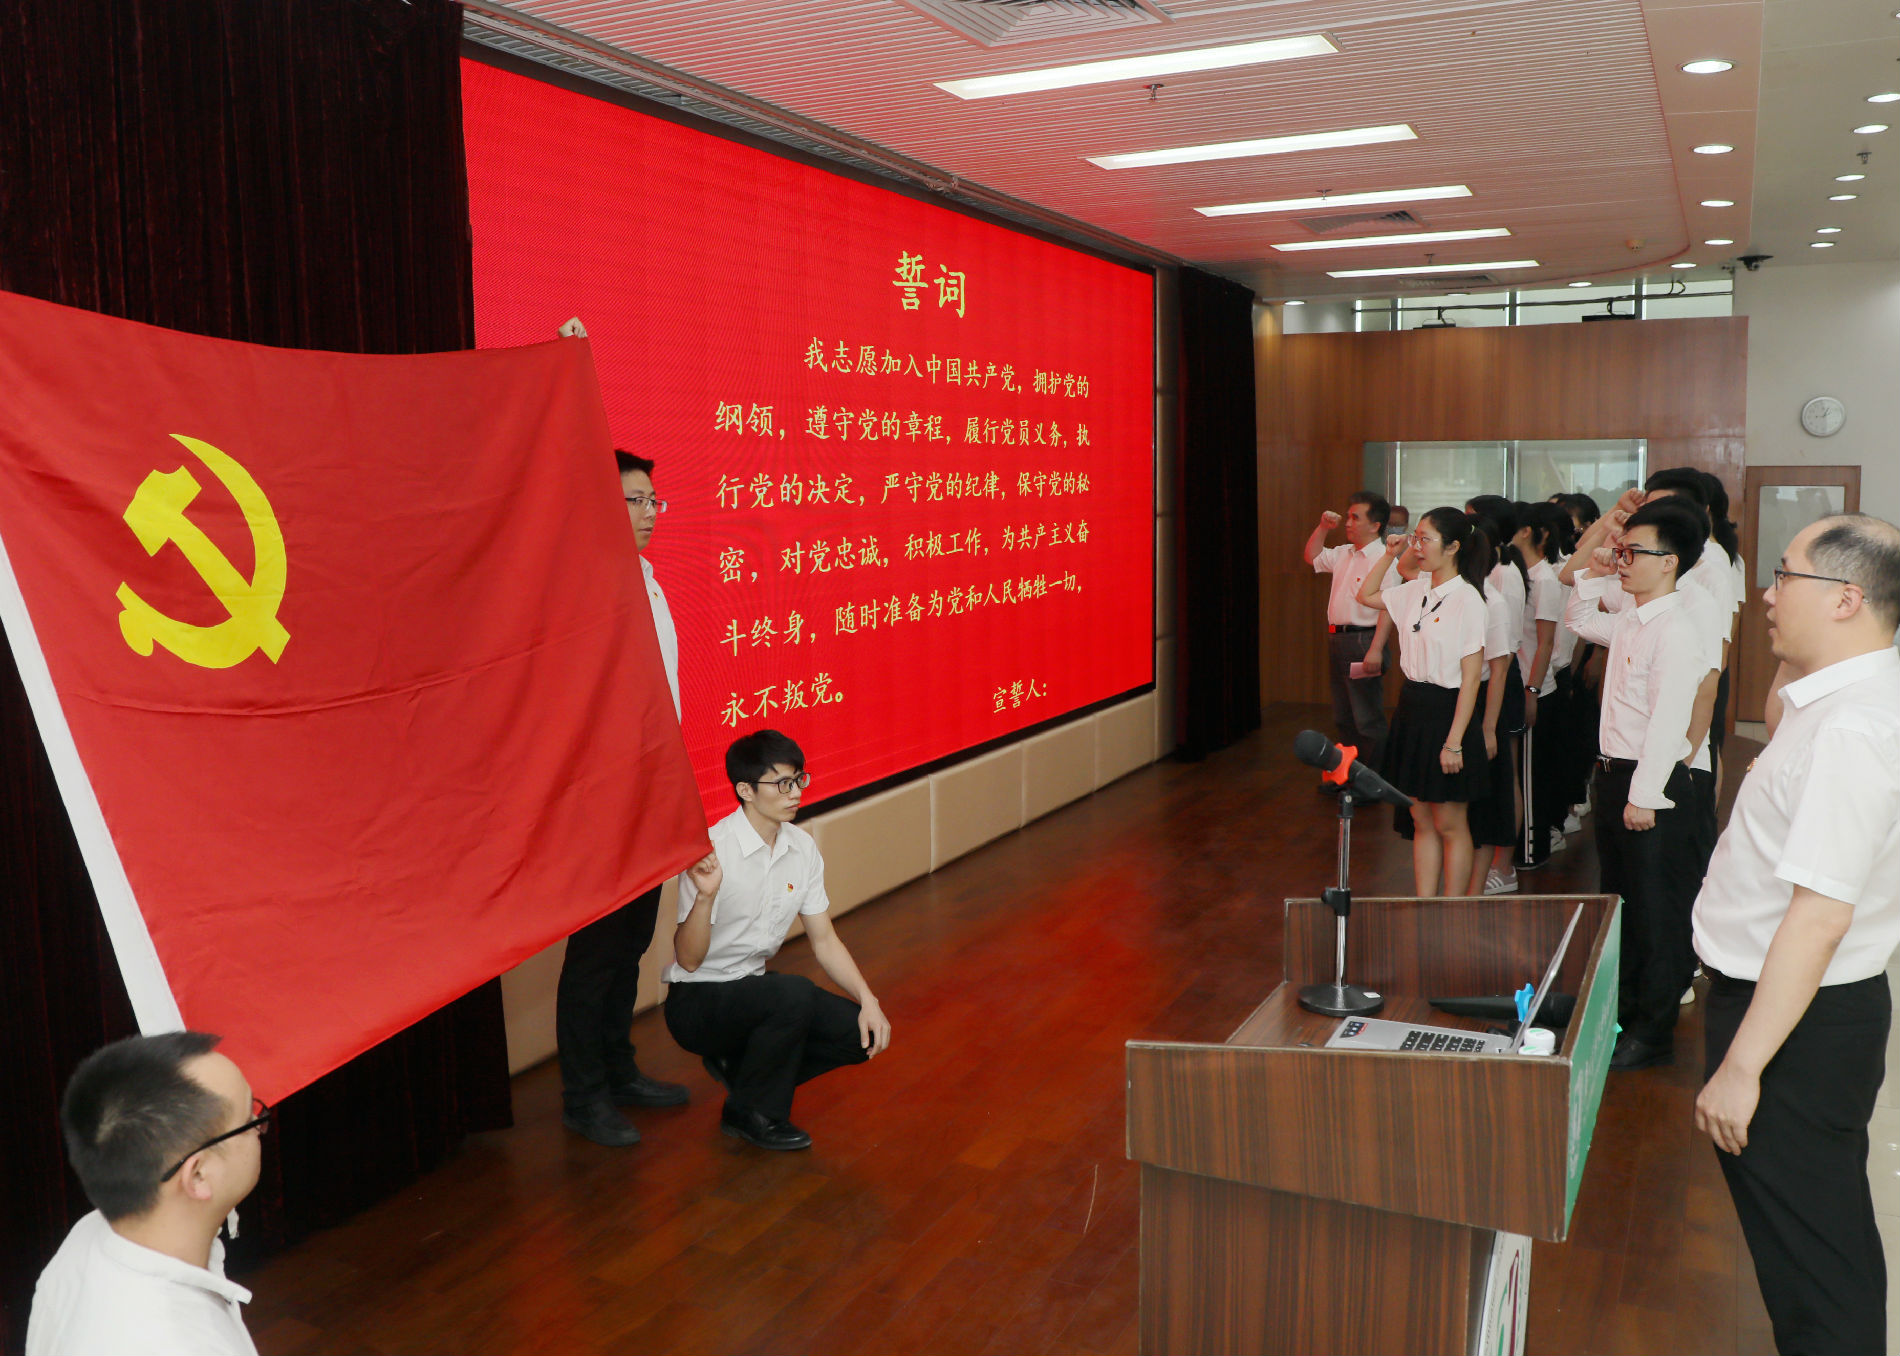 初心不改 99如一 |广医三院召开庆祝中国共产党成立99周年大会